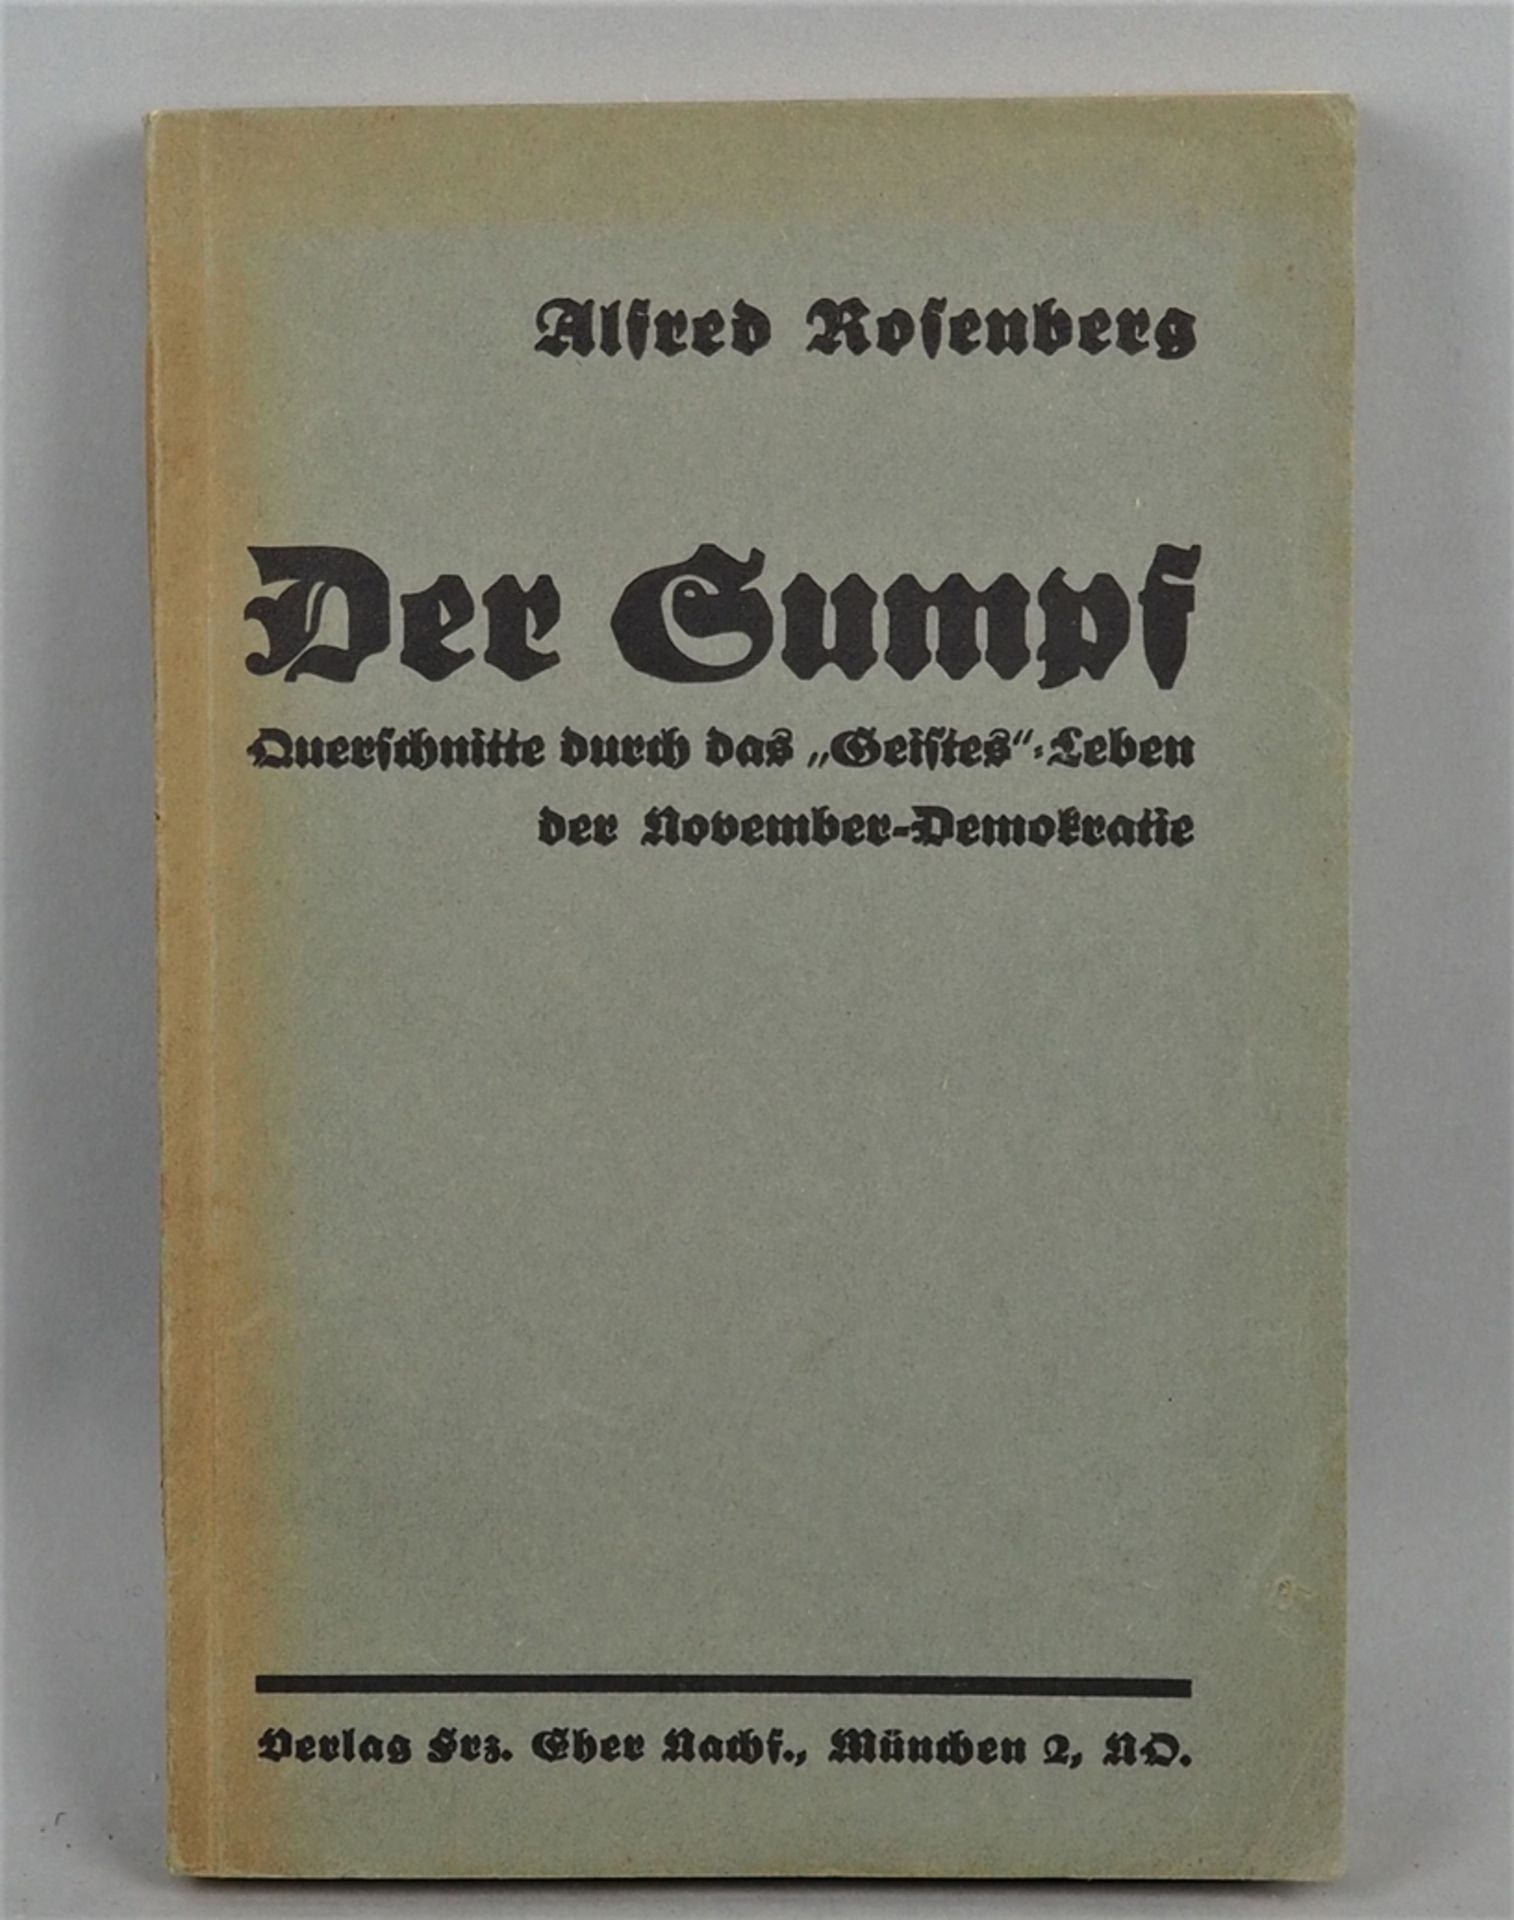 Nazi Propaganda Literature: The Swamp - Alfred Rosenberg, 1930